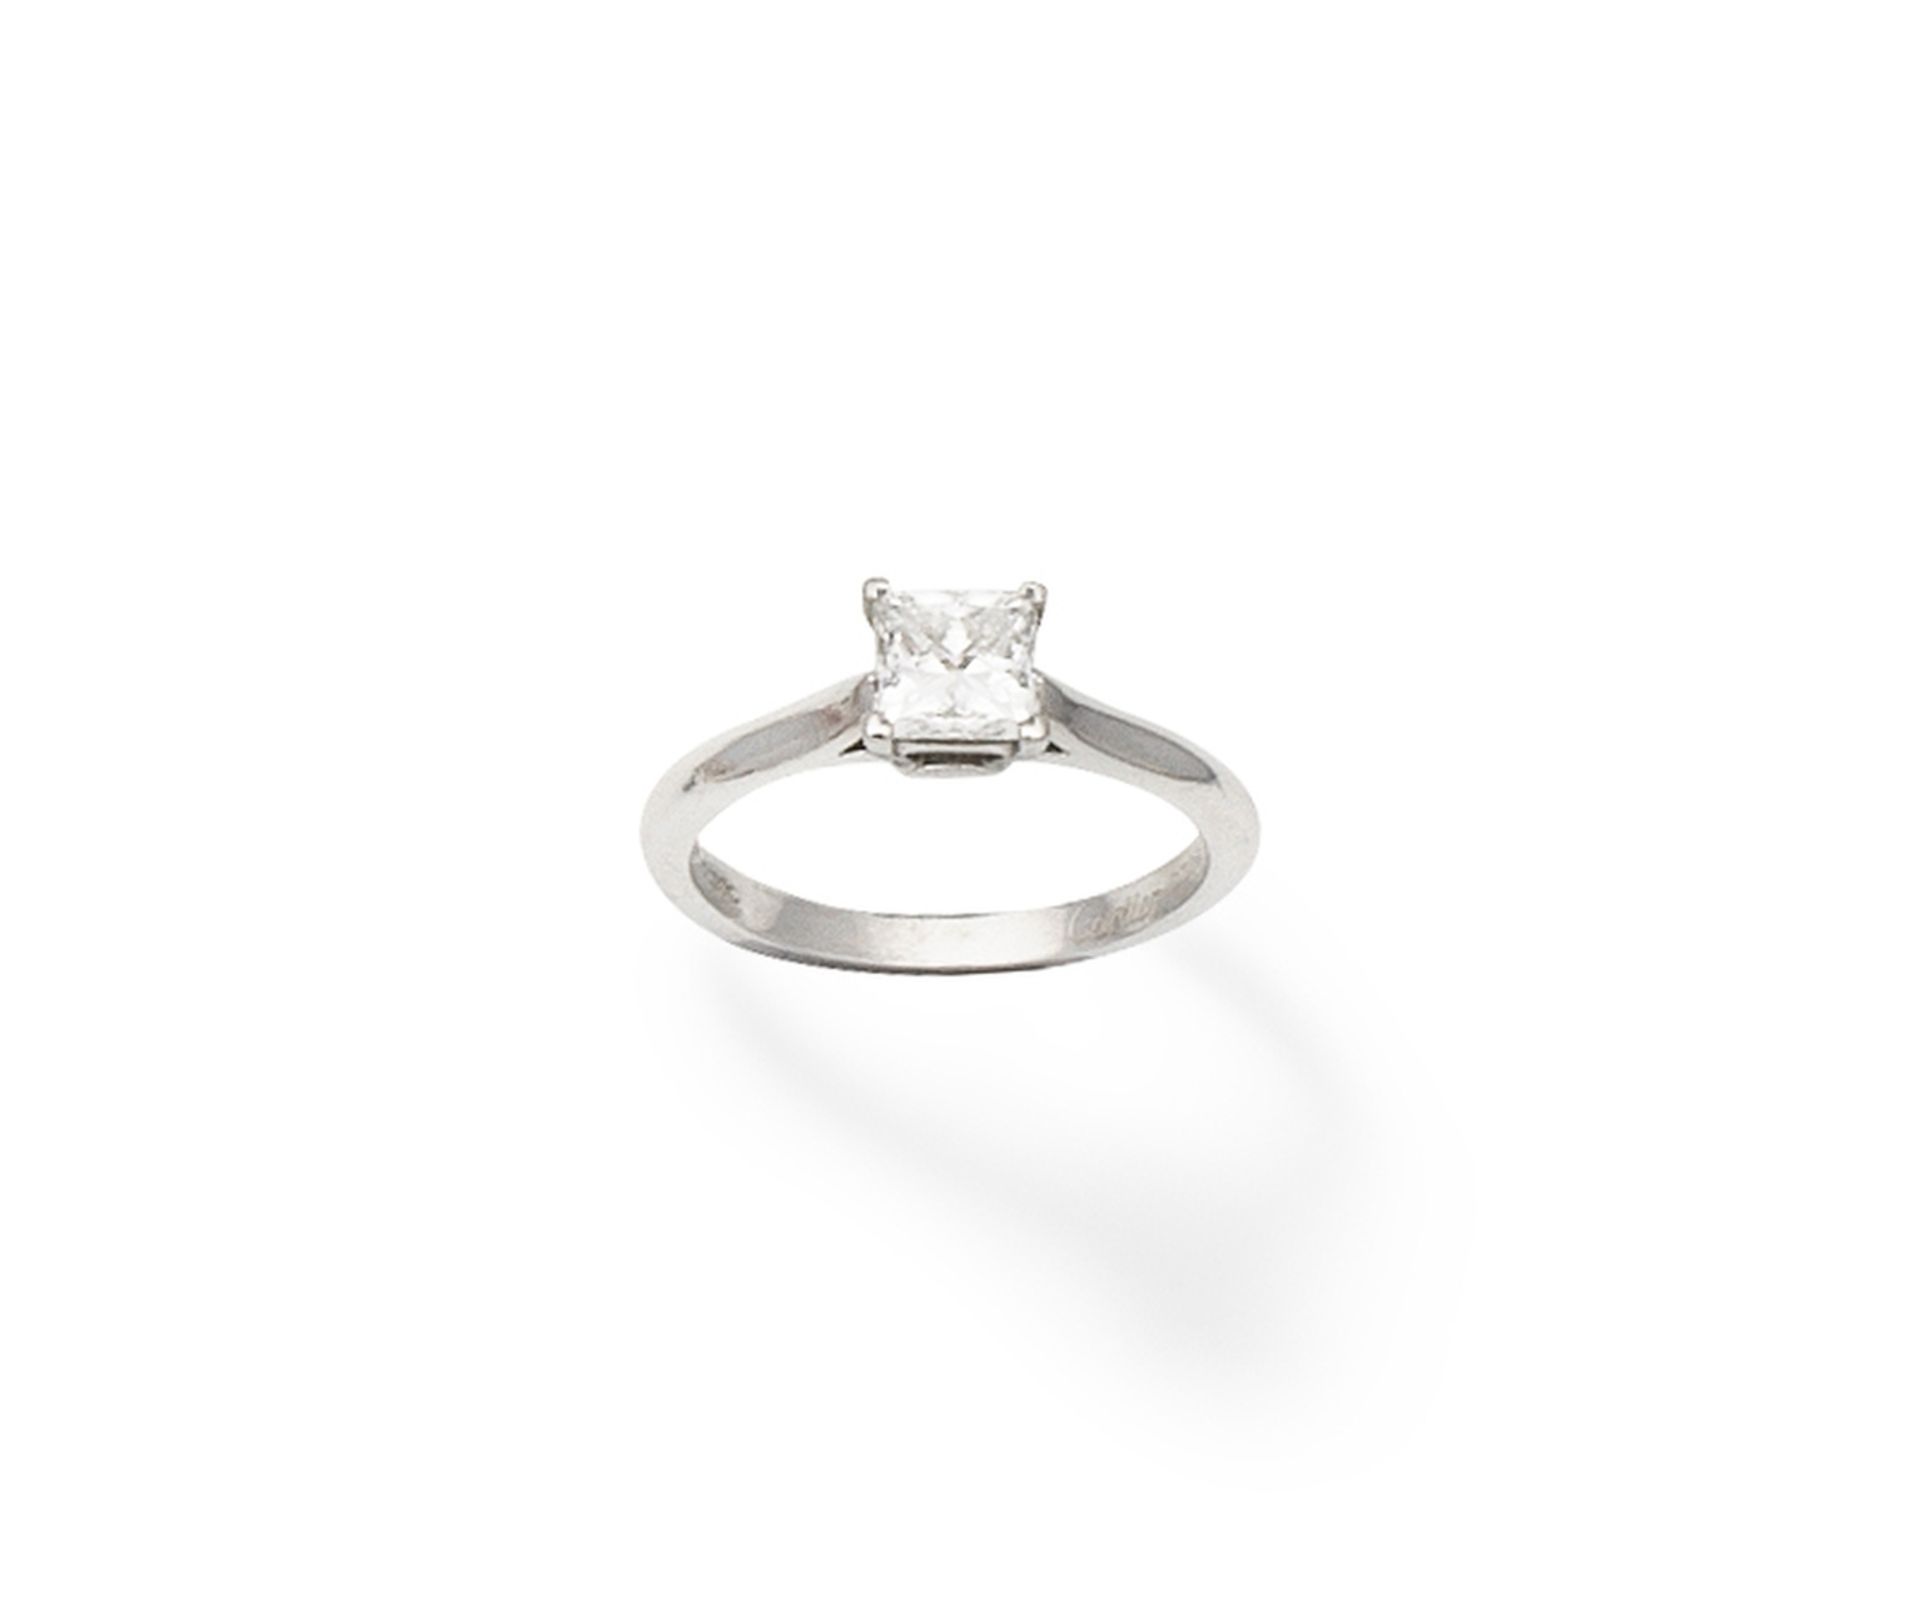 Cartier: a diamond ring